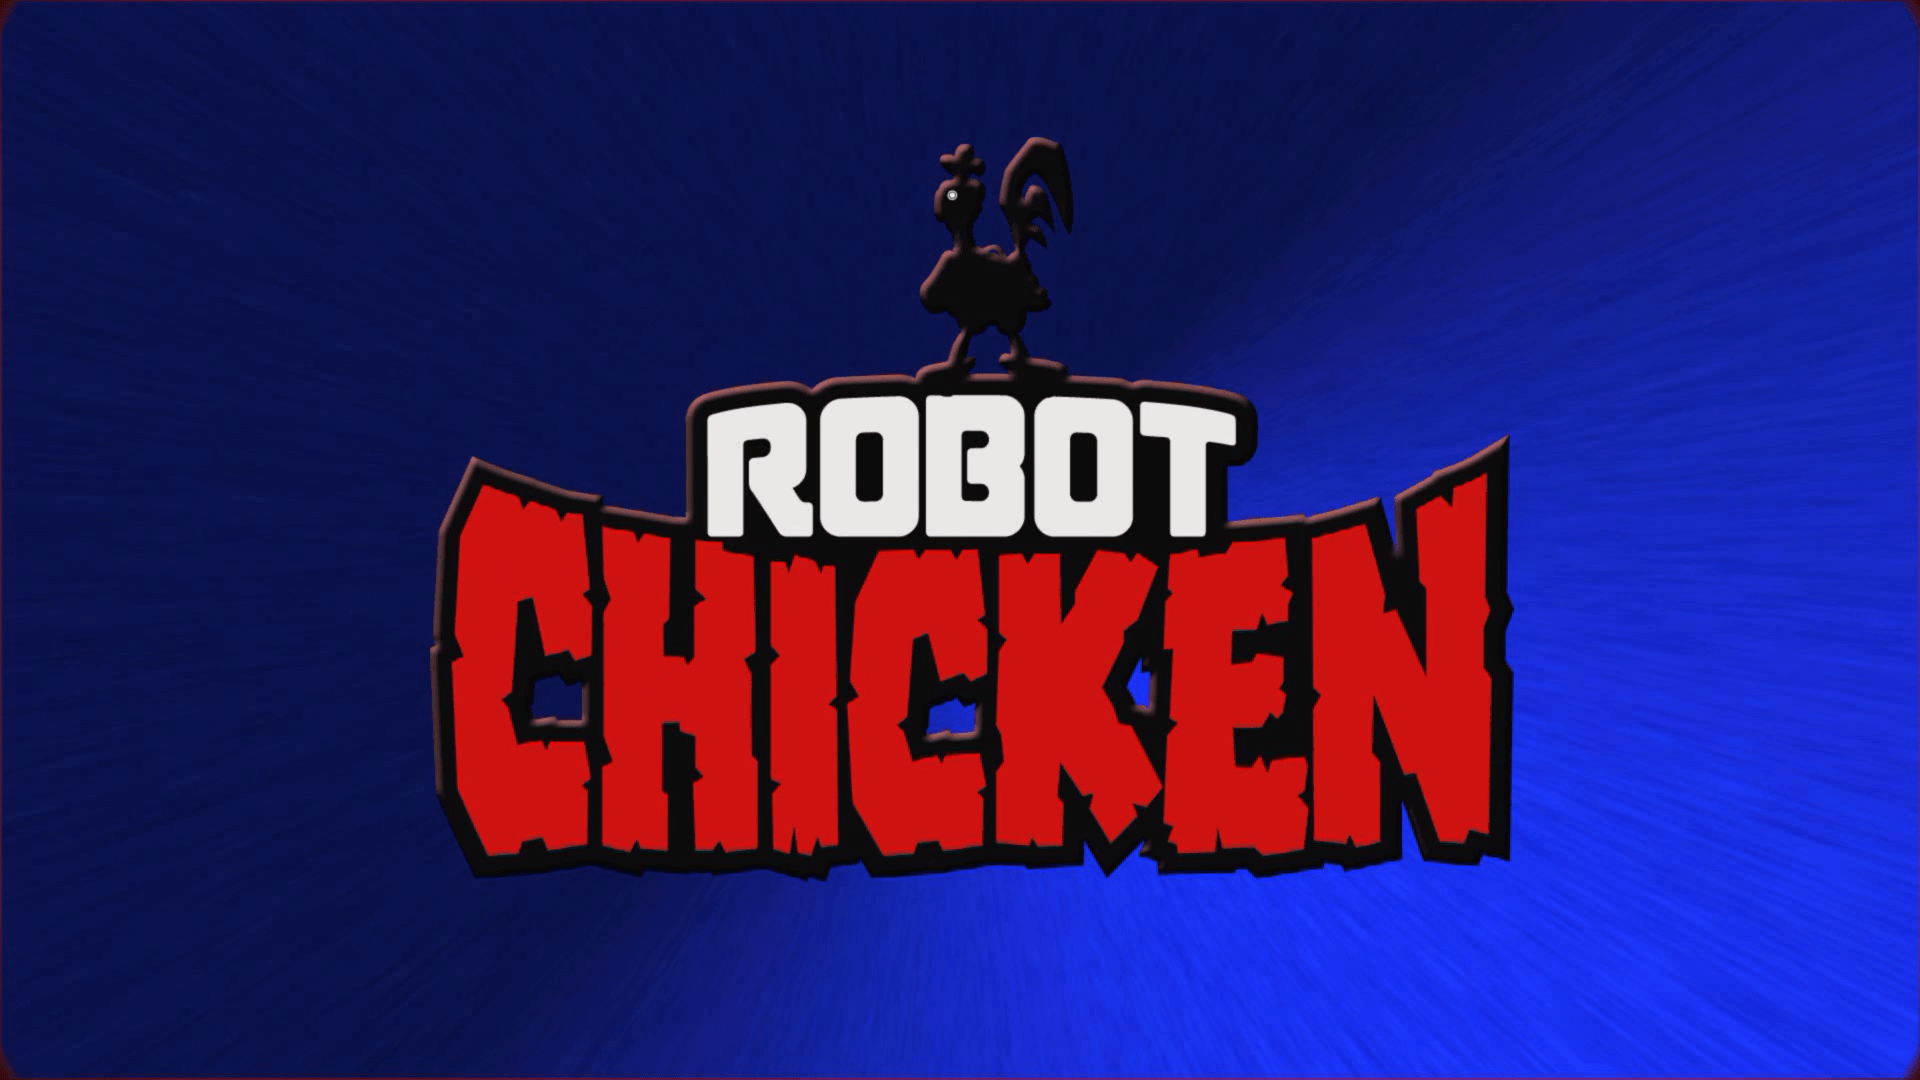 Cartoon Network partners SBS for Robot Chicken Merch